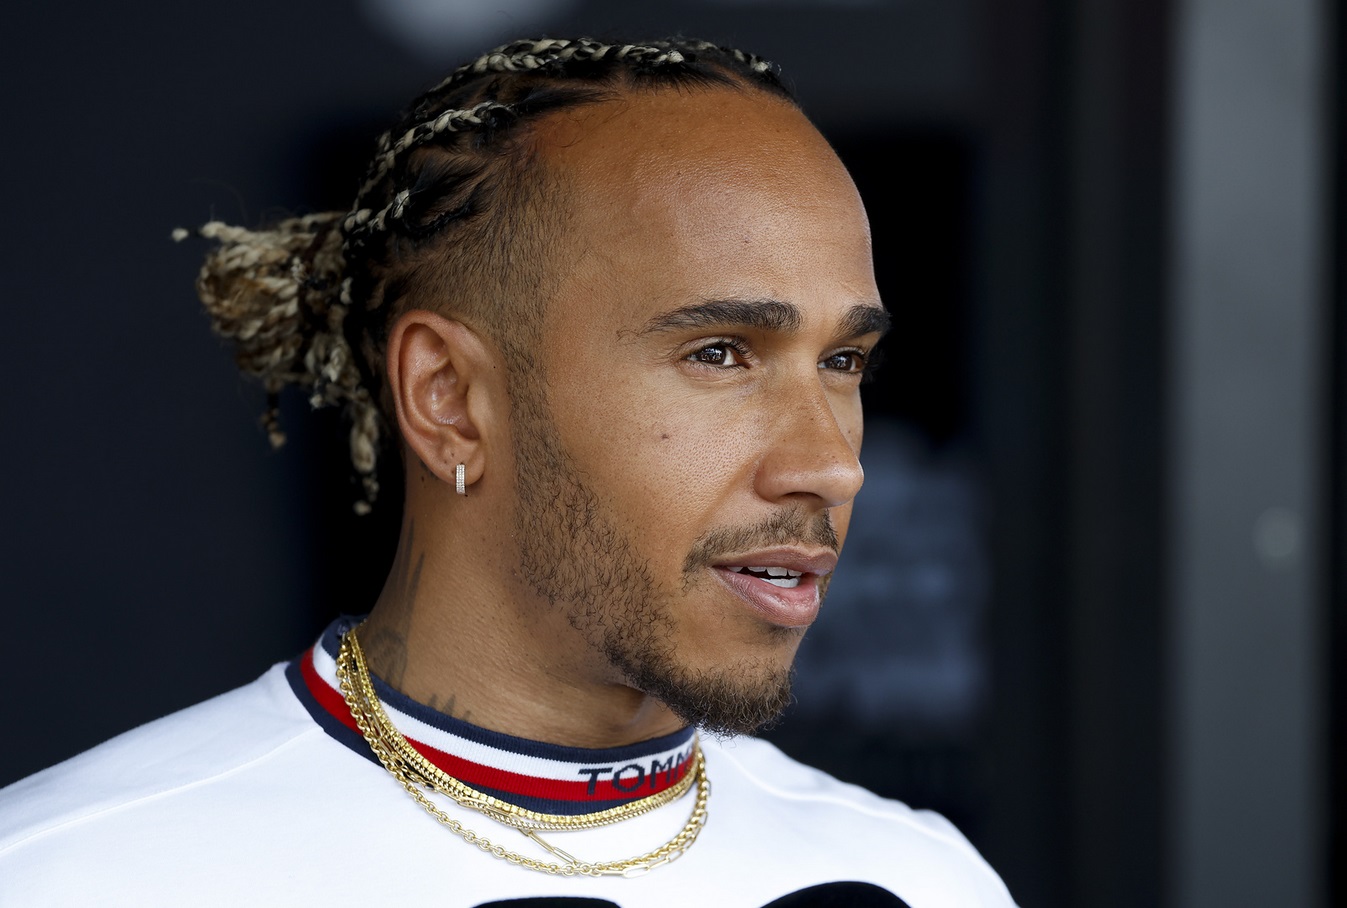 Lewis Hamilton répondant aux questions des journalistes au Grand Prix de Hongrie 2022